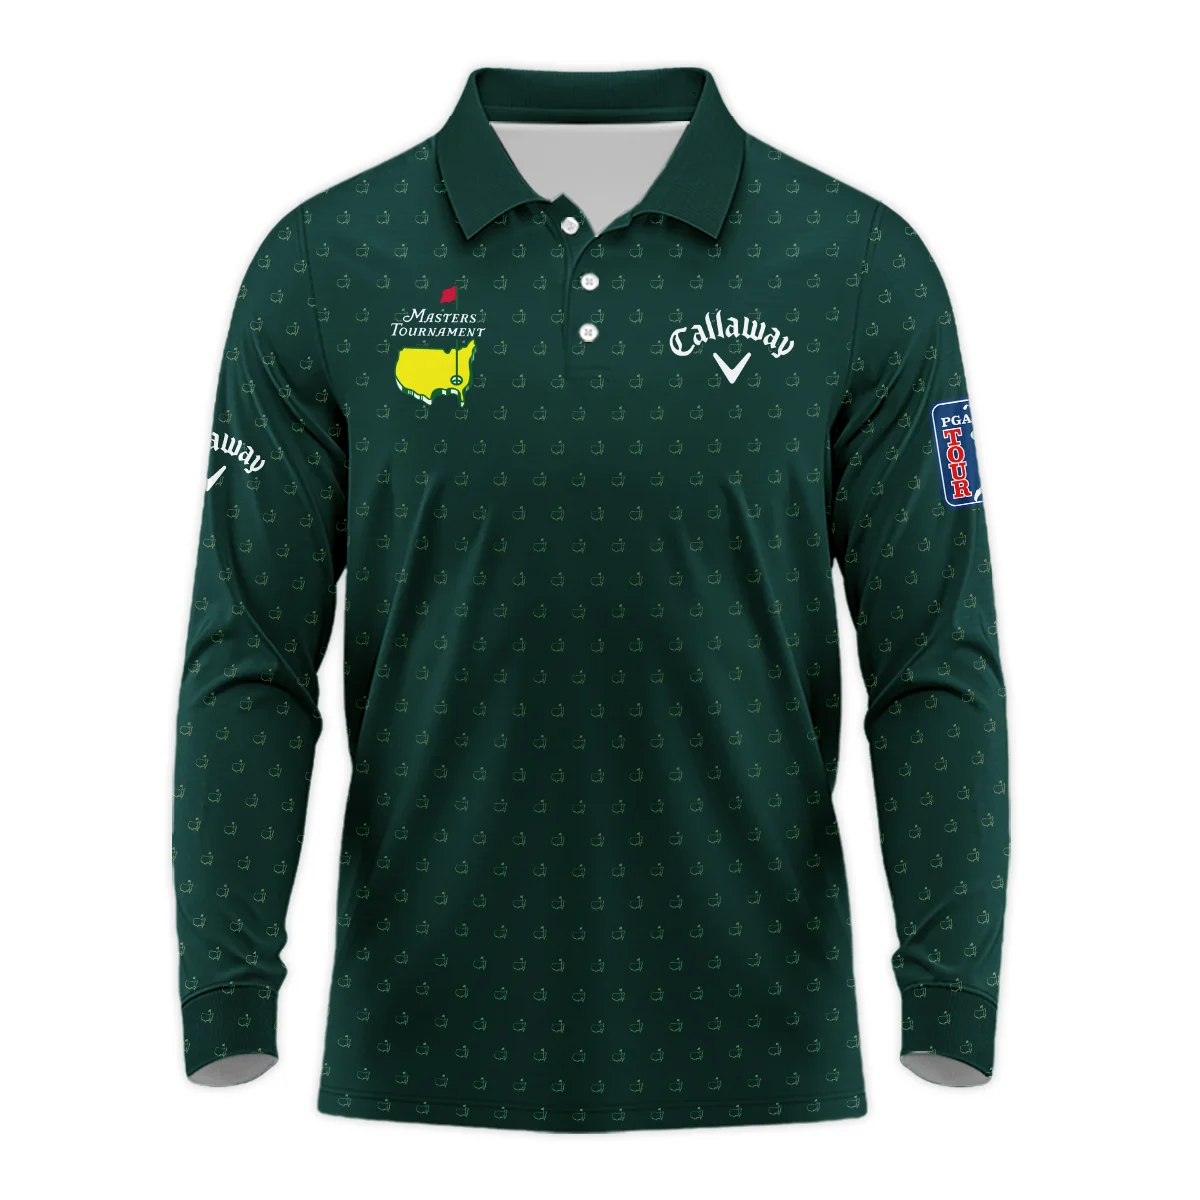 Golf Masters Tournament Callaway Zipper Hoodie Shirt Logo Pattern Gold Green Golf Sports All Over Print Zipper Hoodie Shirt